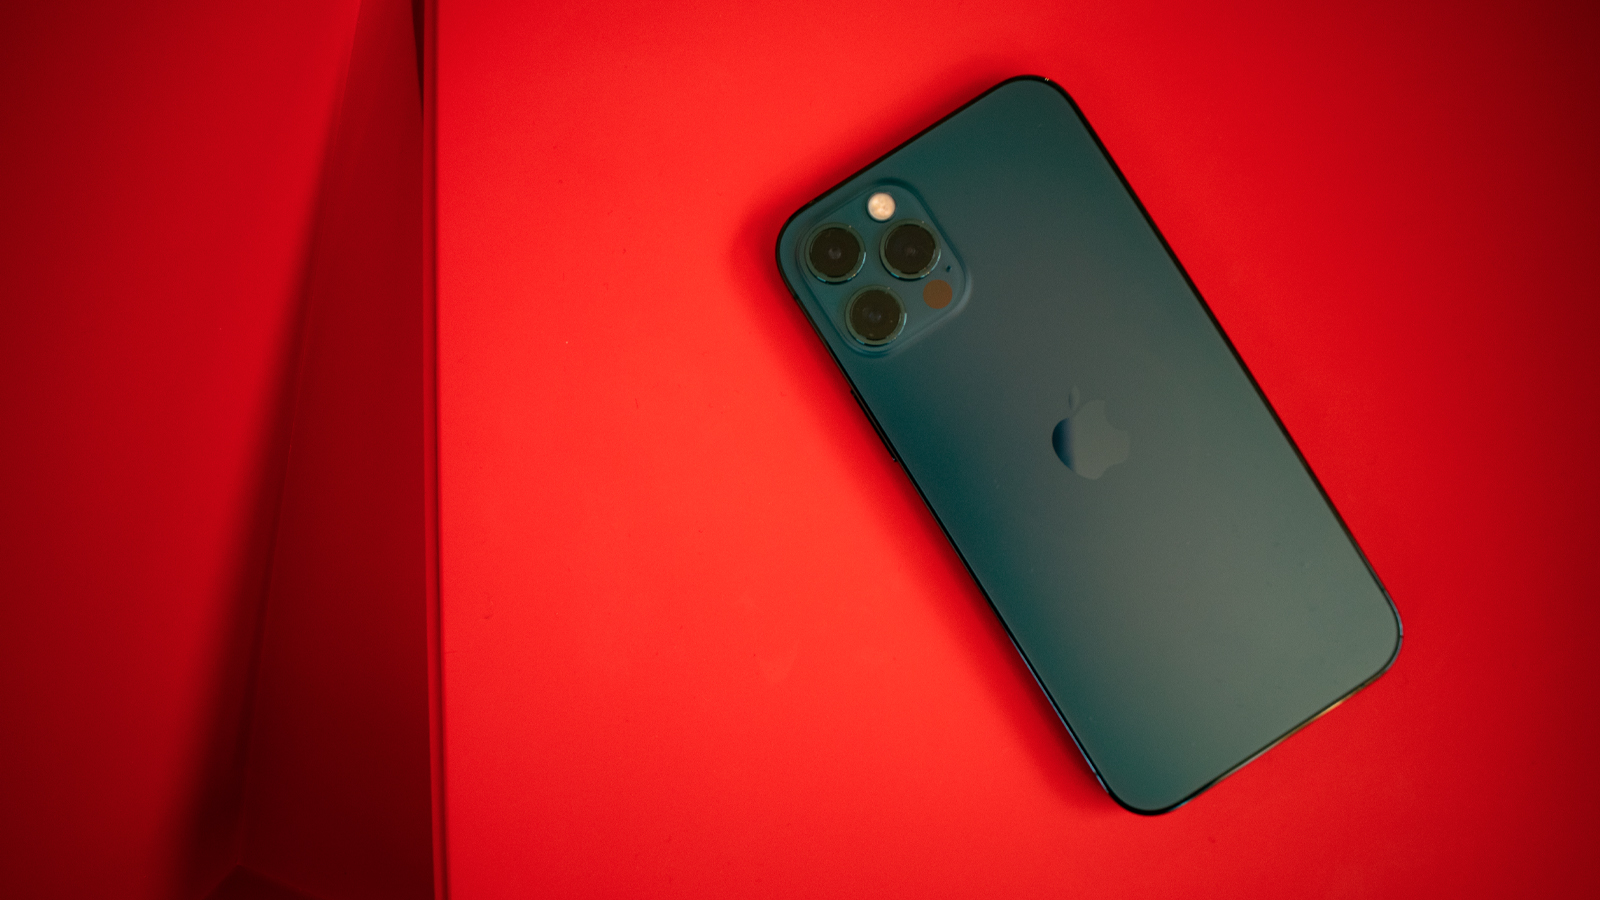 أخبار 1 نوفمبر 2020
Apple يجعل إصلاحات iPhone 12 من قبل أطراف ثالثة شبه مستحيلة